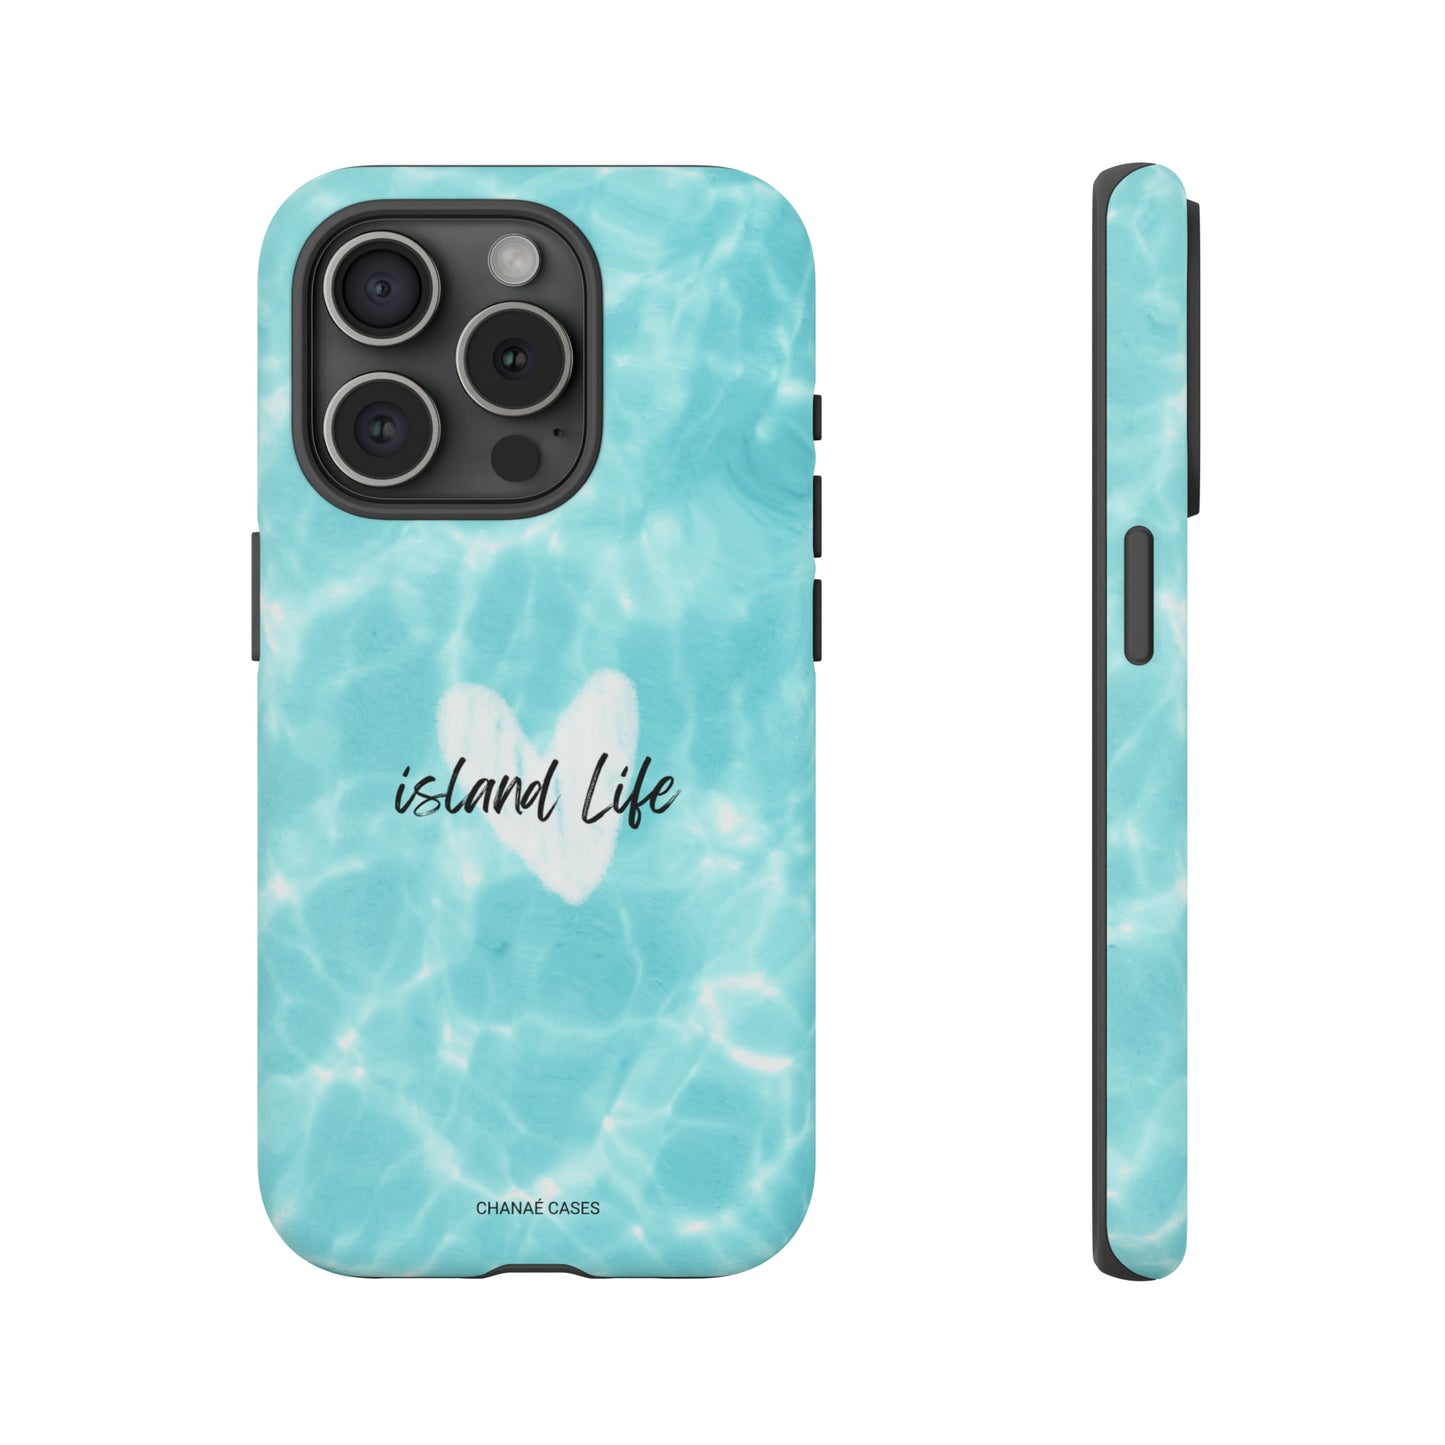 Island Life Lover iPhone "Tough" Case (Ocean Blue)